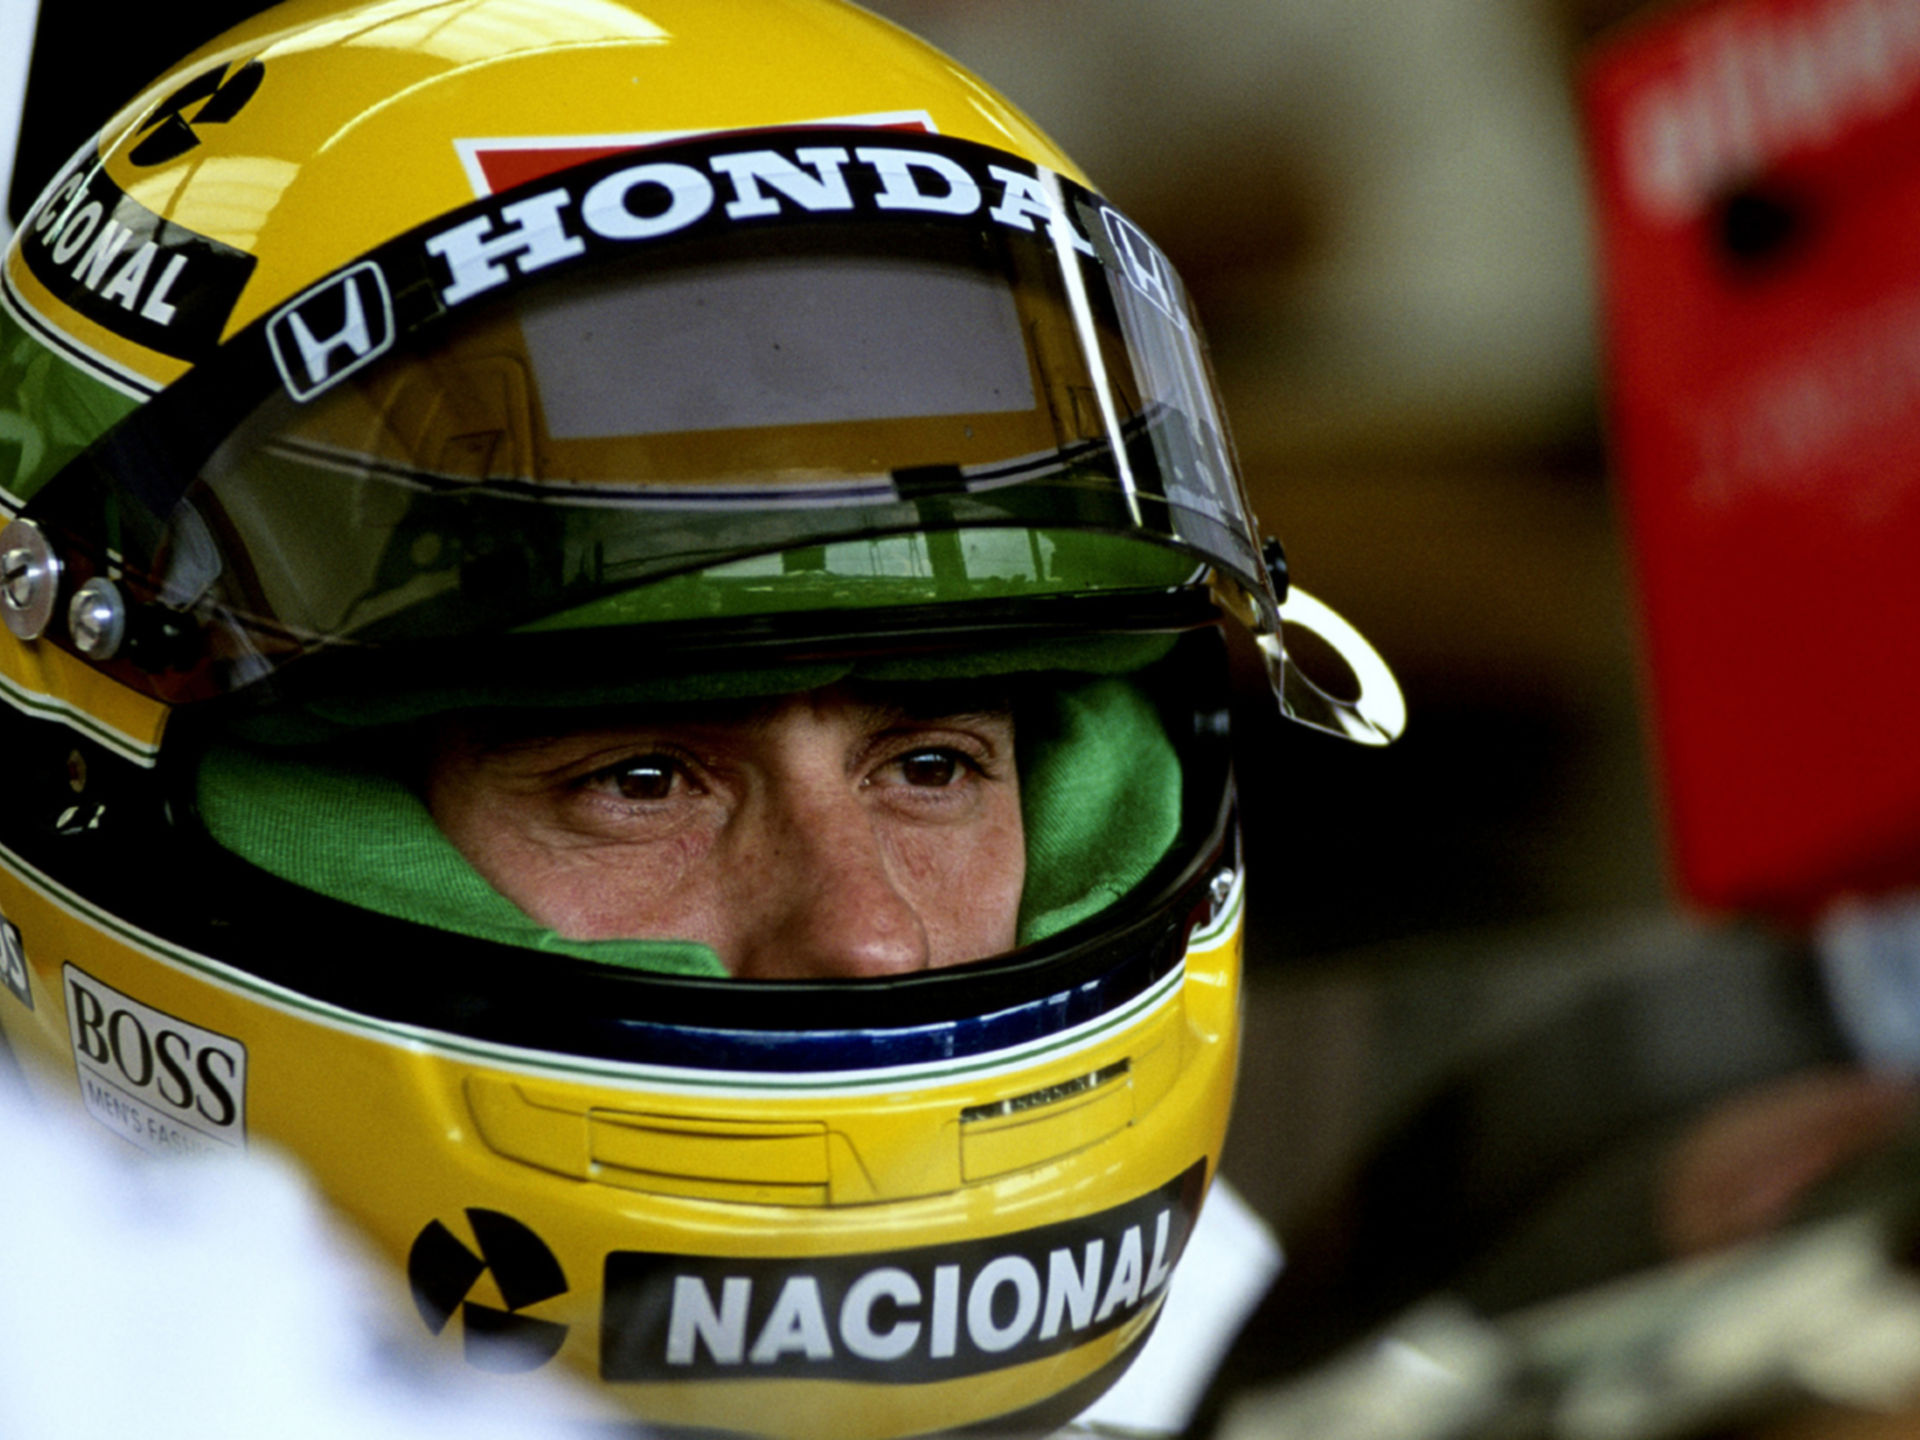 McLaren Senna - The Racing Legend Ayrton Senna